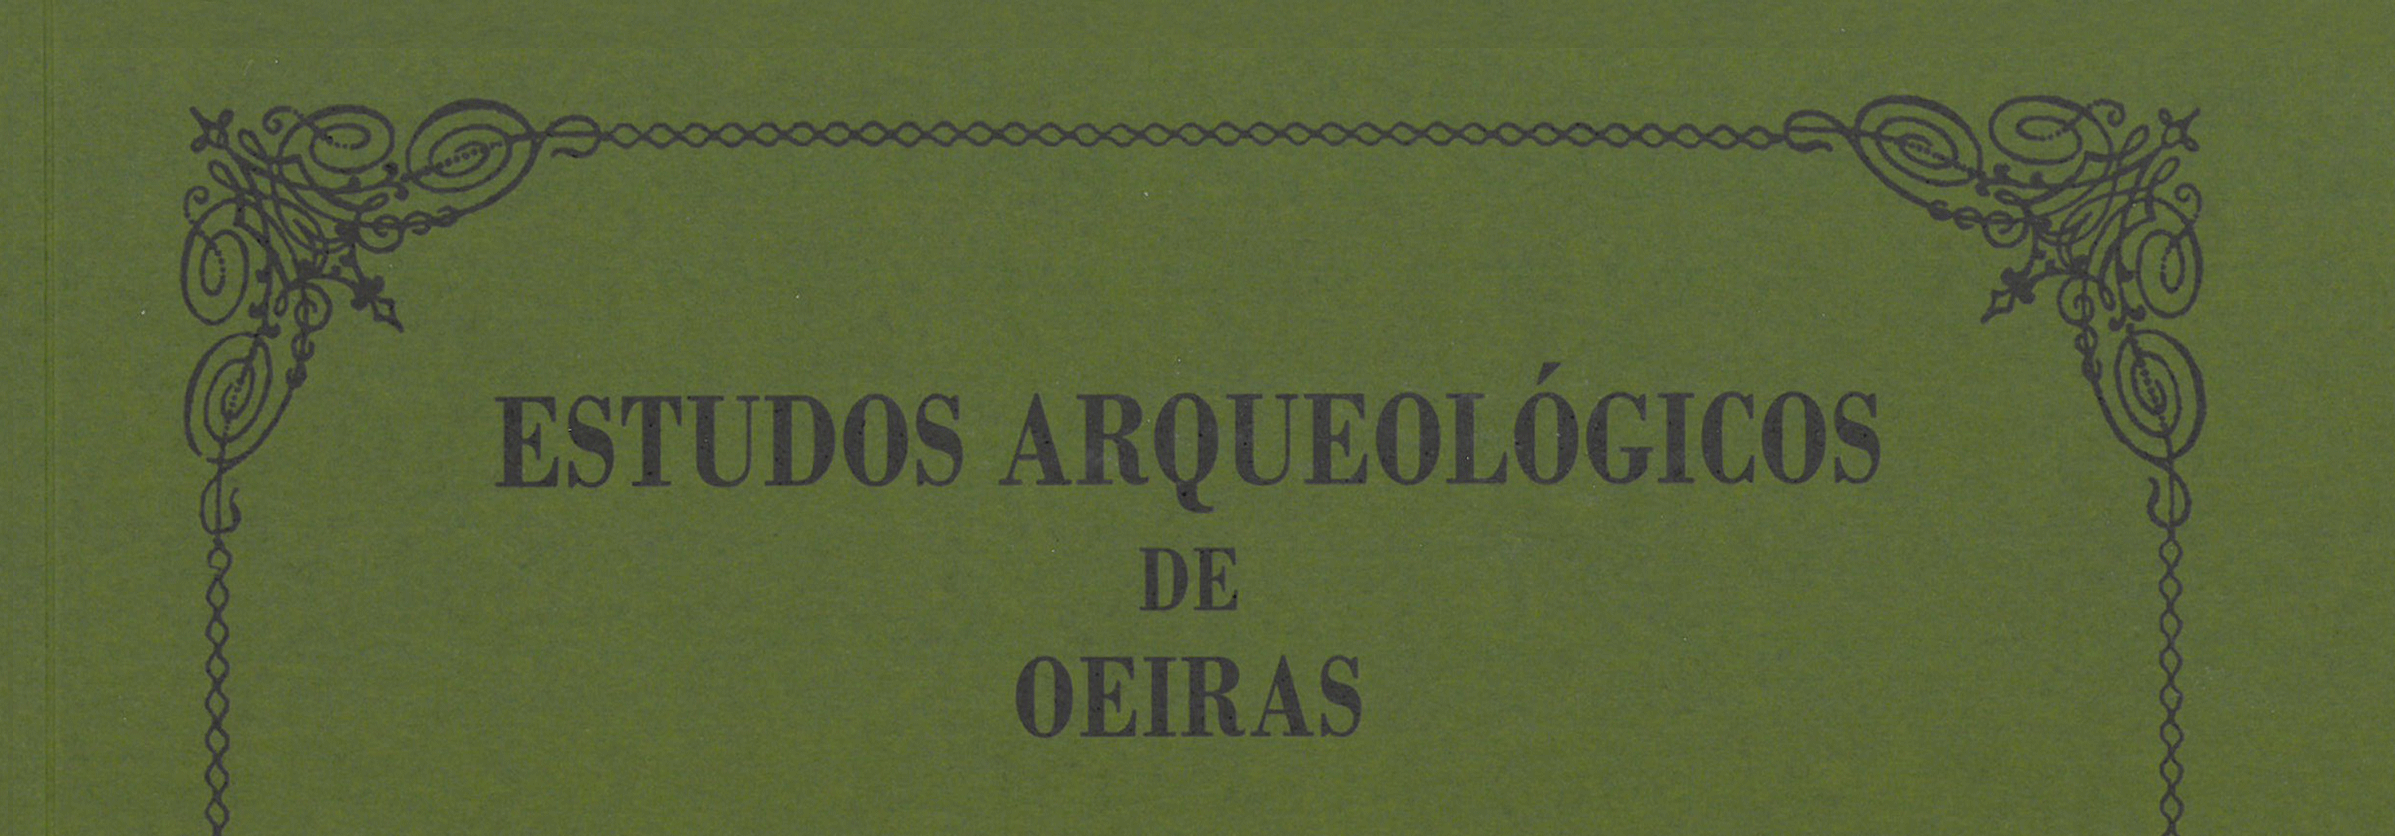 Estudos Arqueológicos de Oeiras, 28